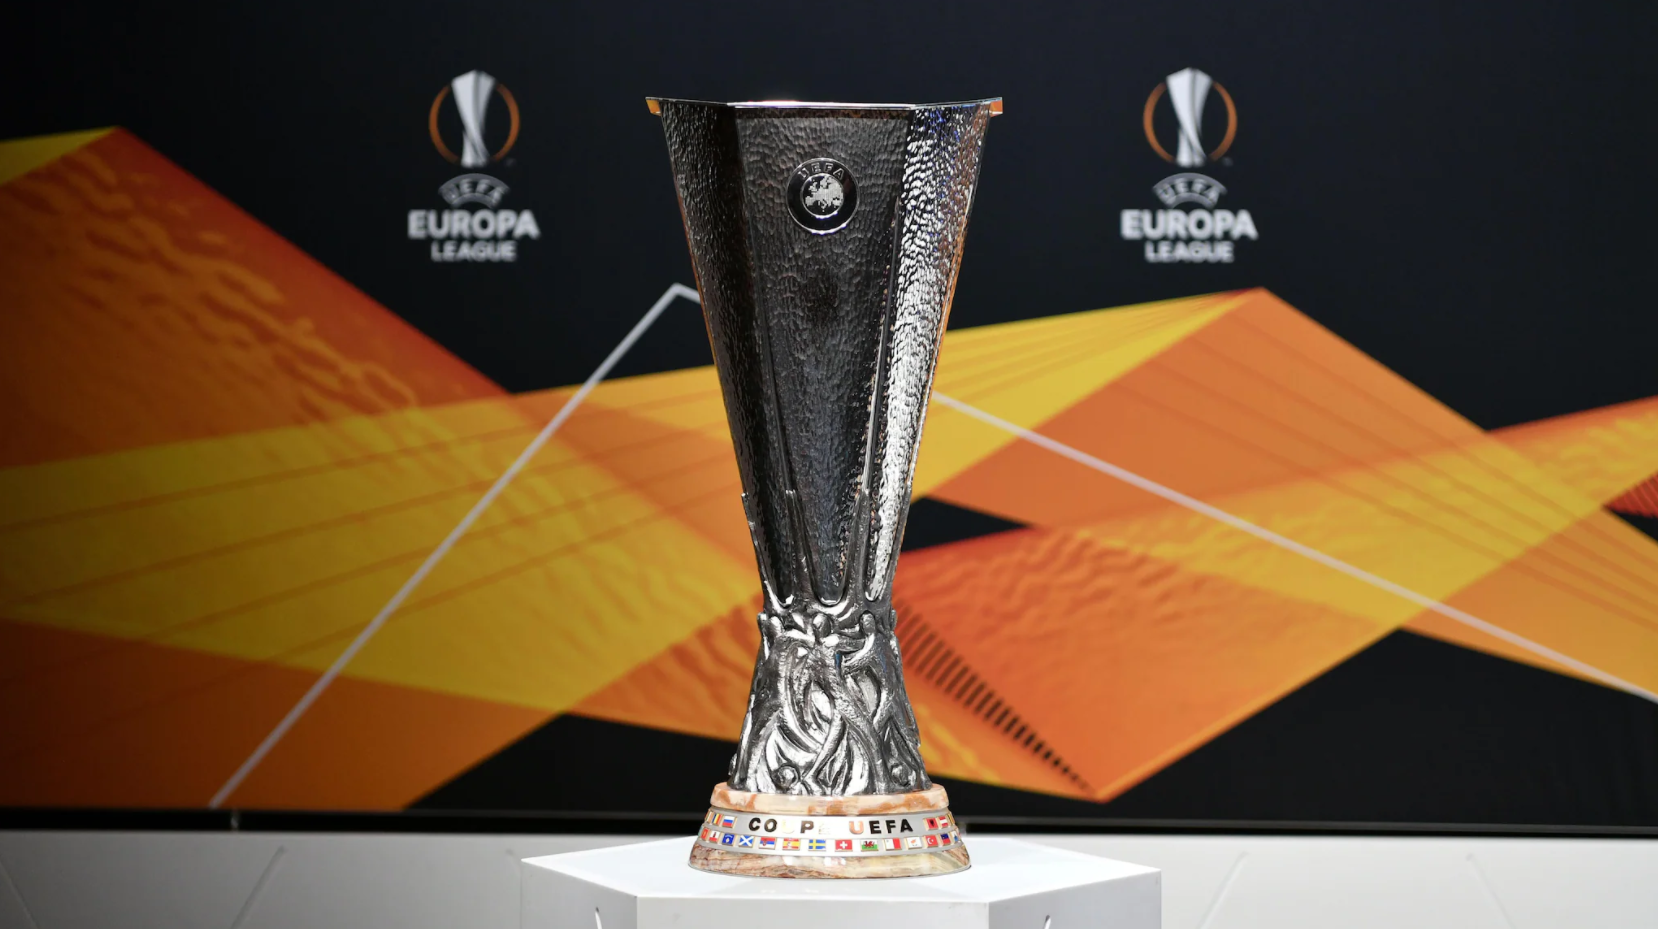 L’Europa League : comment la voir en intégralité ?